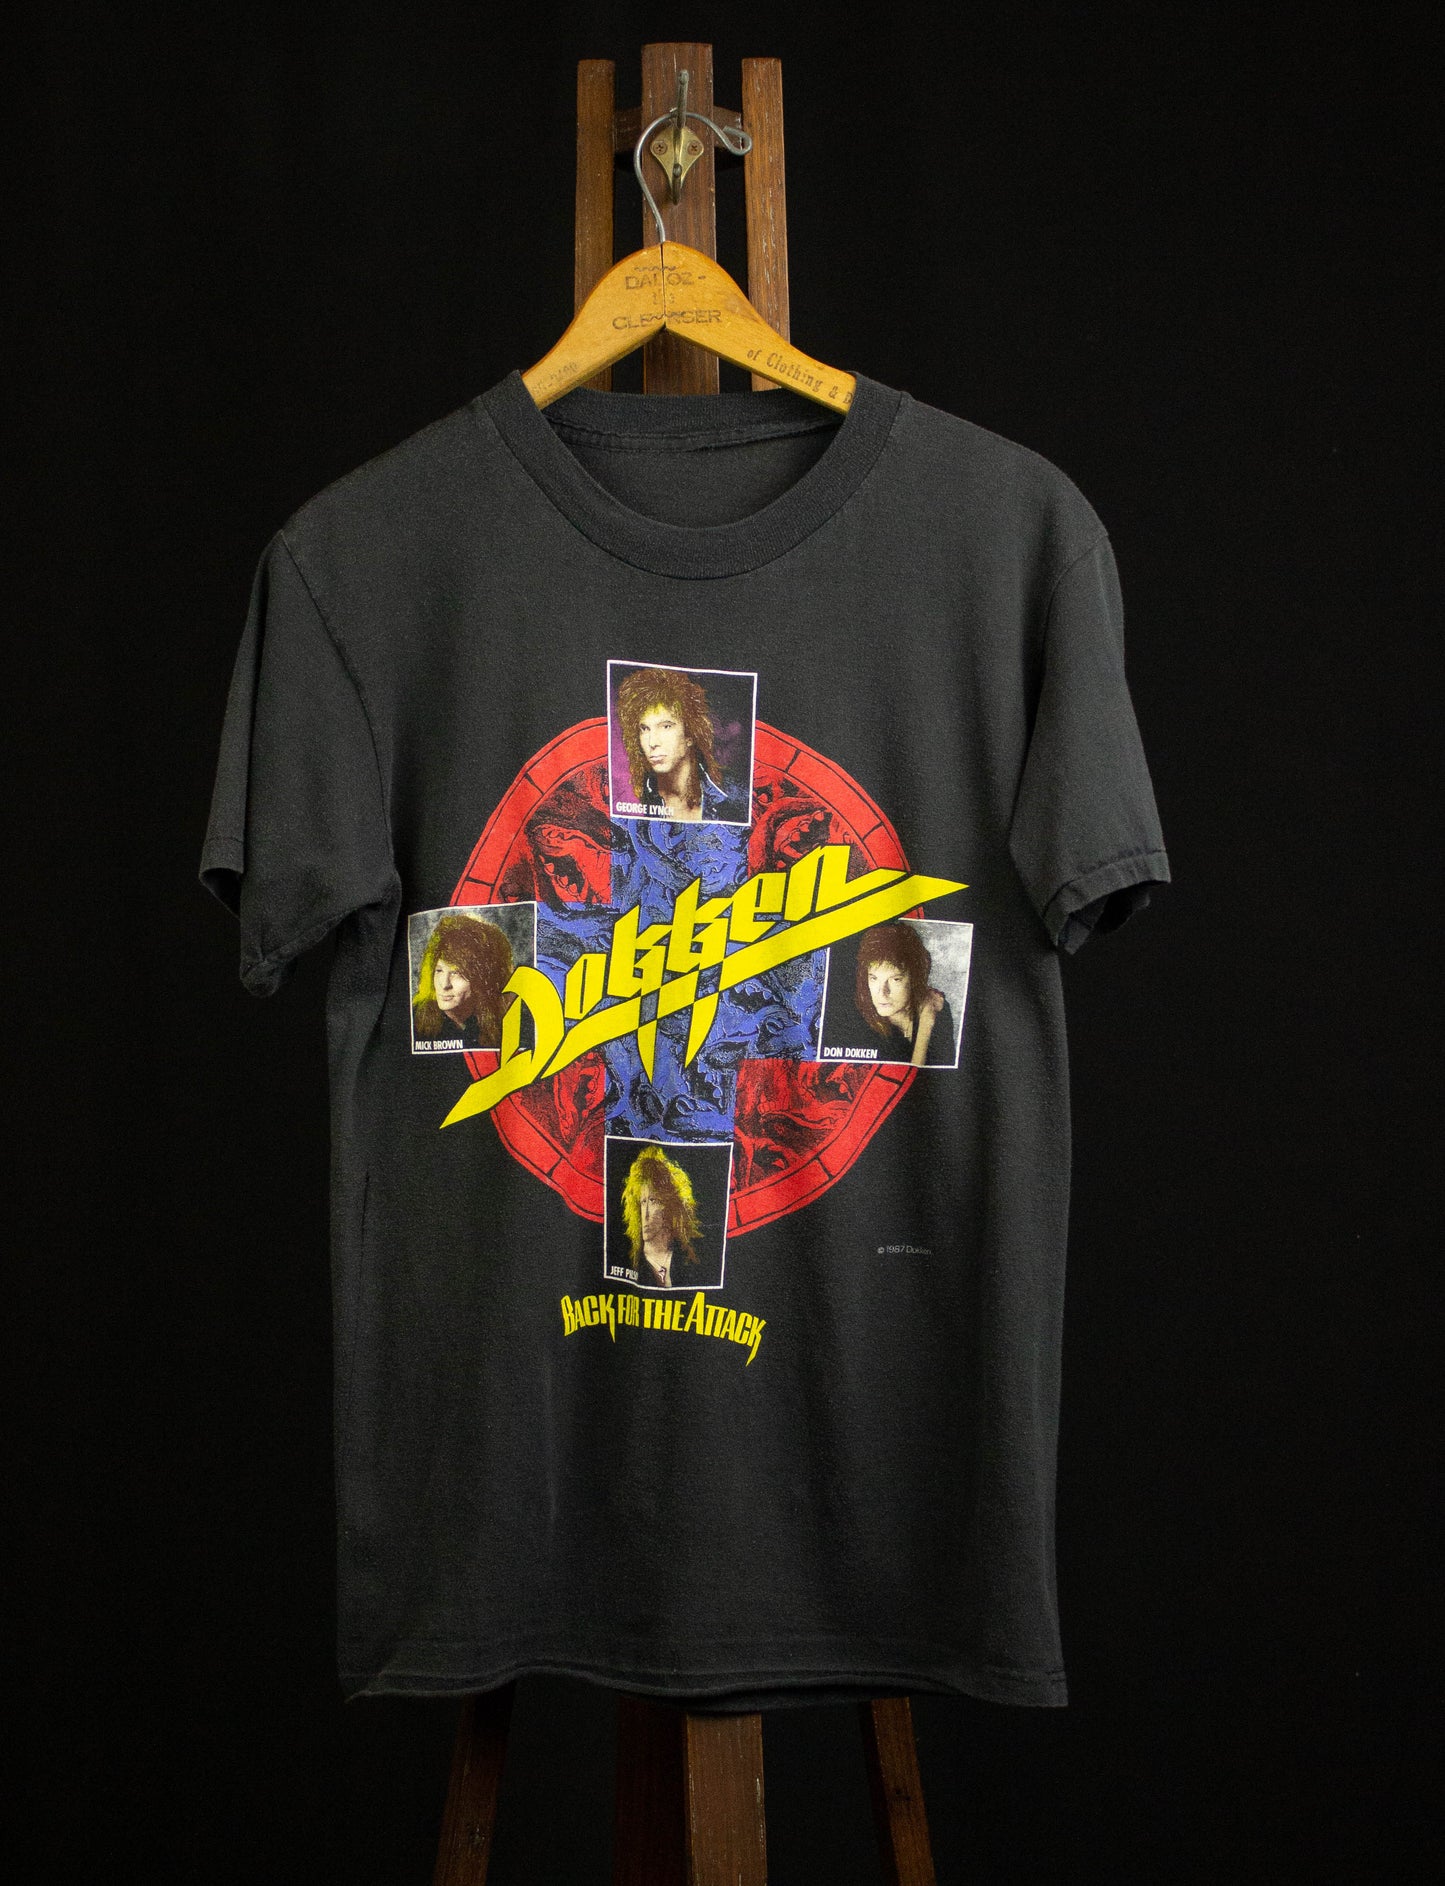 Vintage Dokken 1987 Back For The Attack Concert T Shirt Black Medium